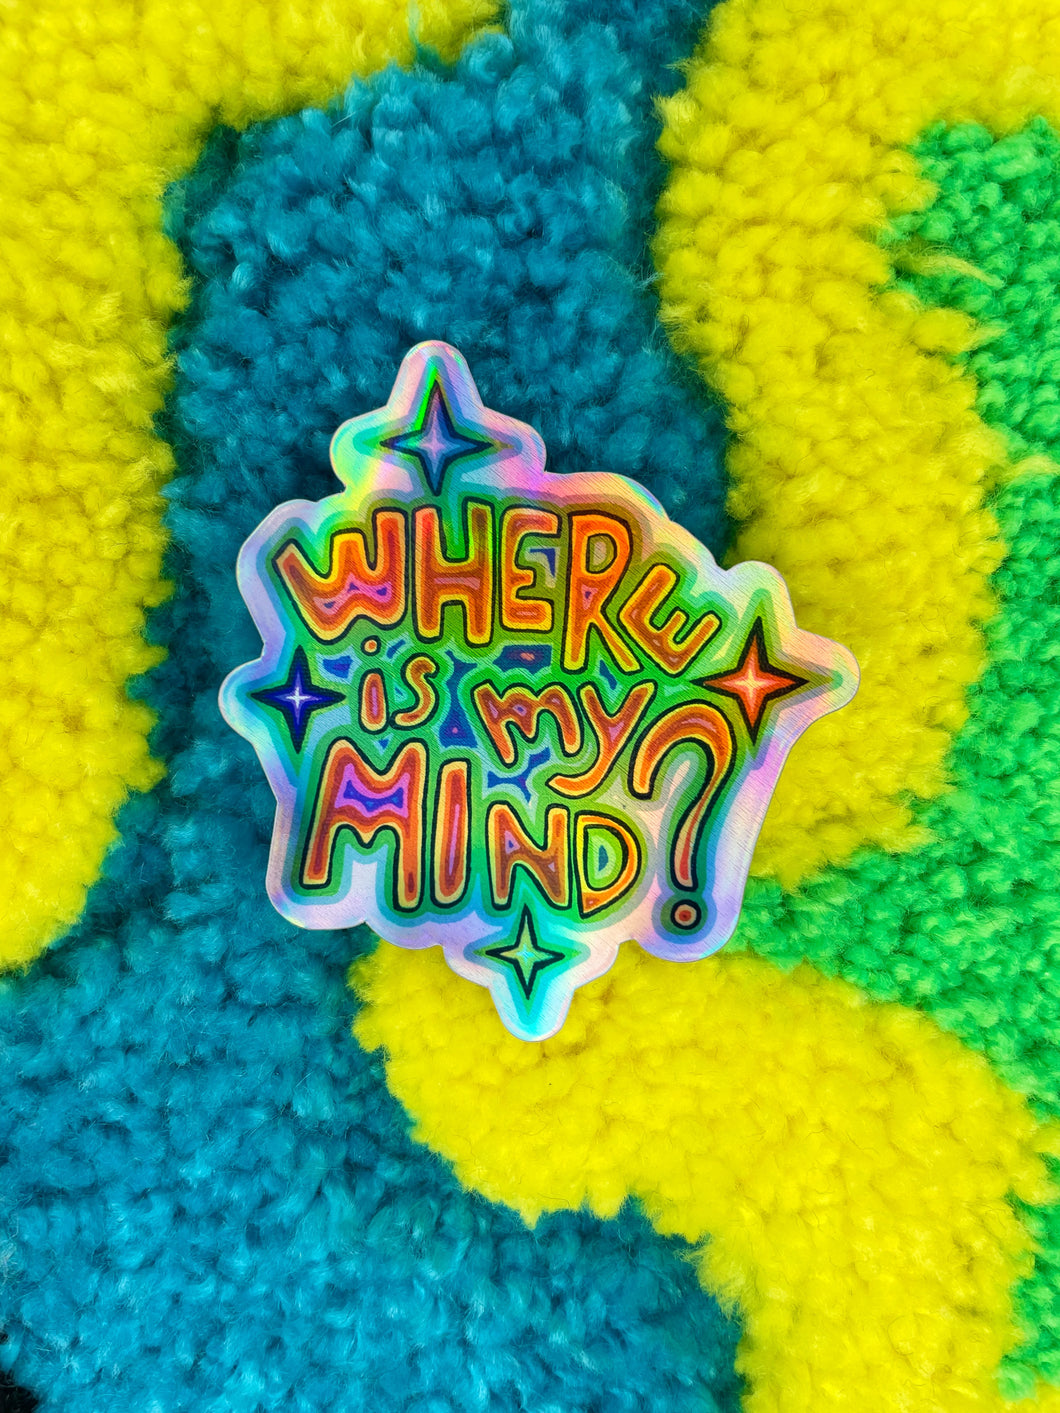 Sticker Where is my mind?